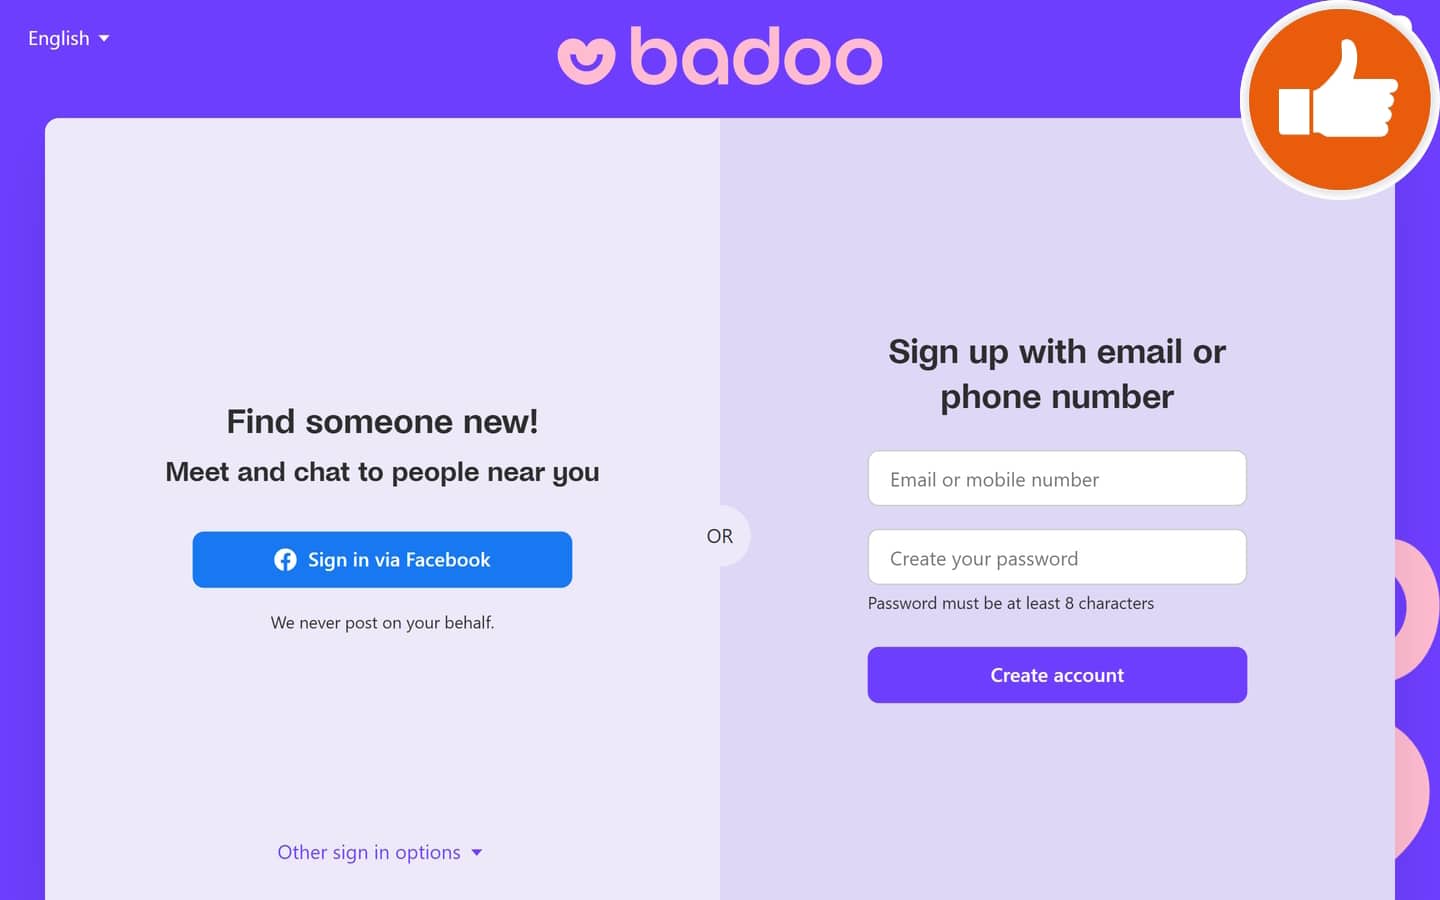 Review Badoo.com scam experience